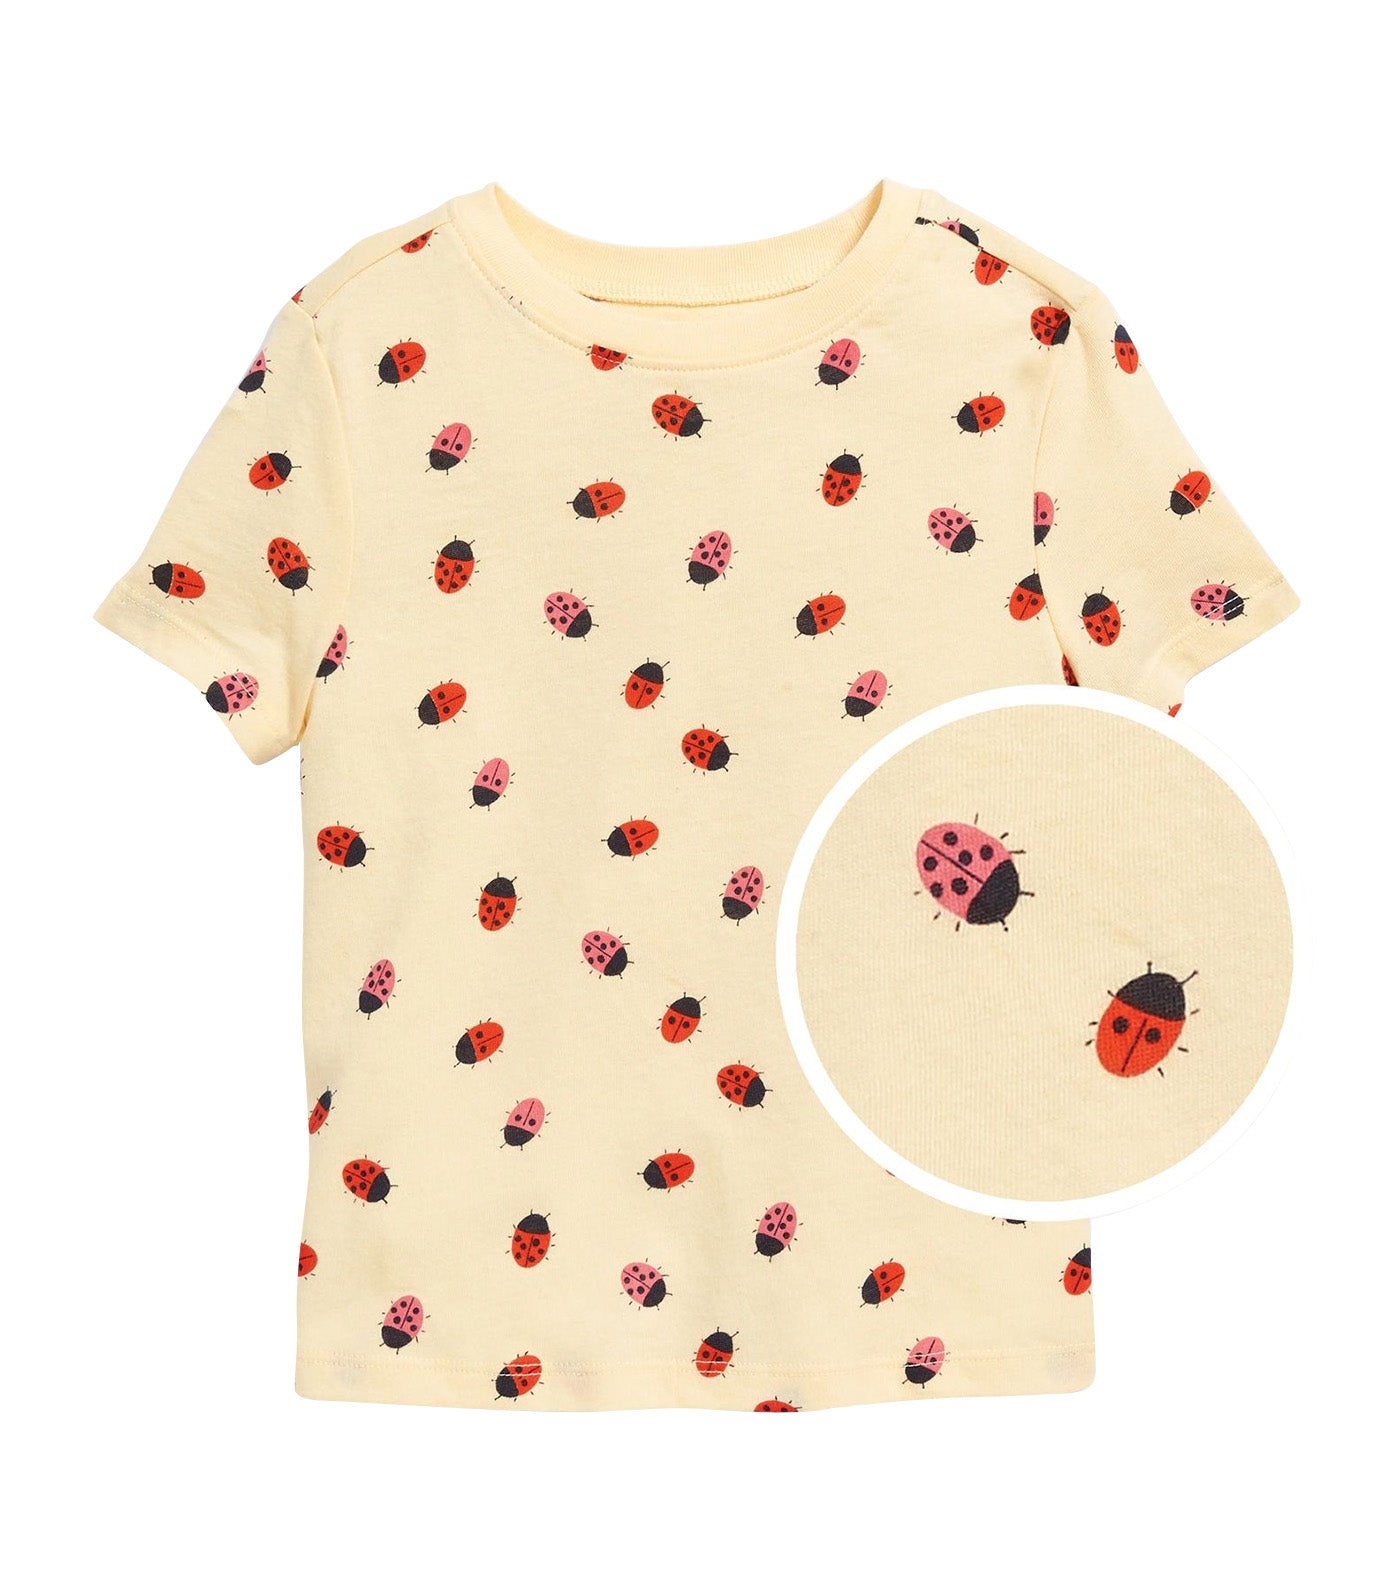 Unisex Printed Crew-Neck T-Shirt for Toddler - Ladybug